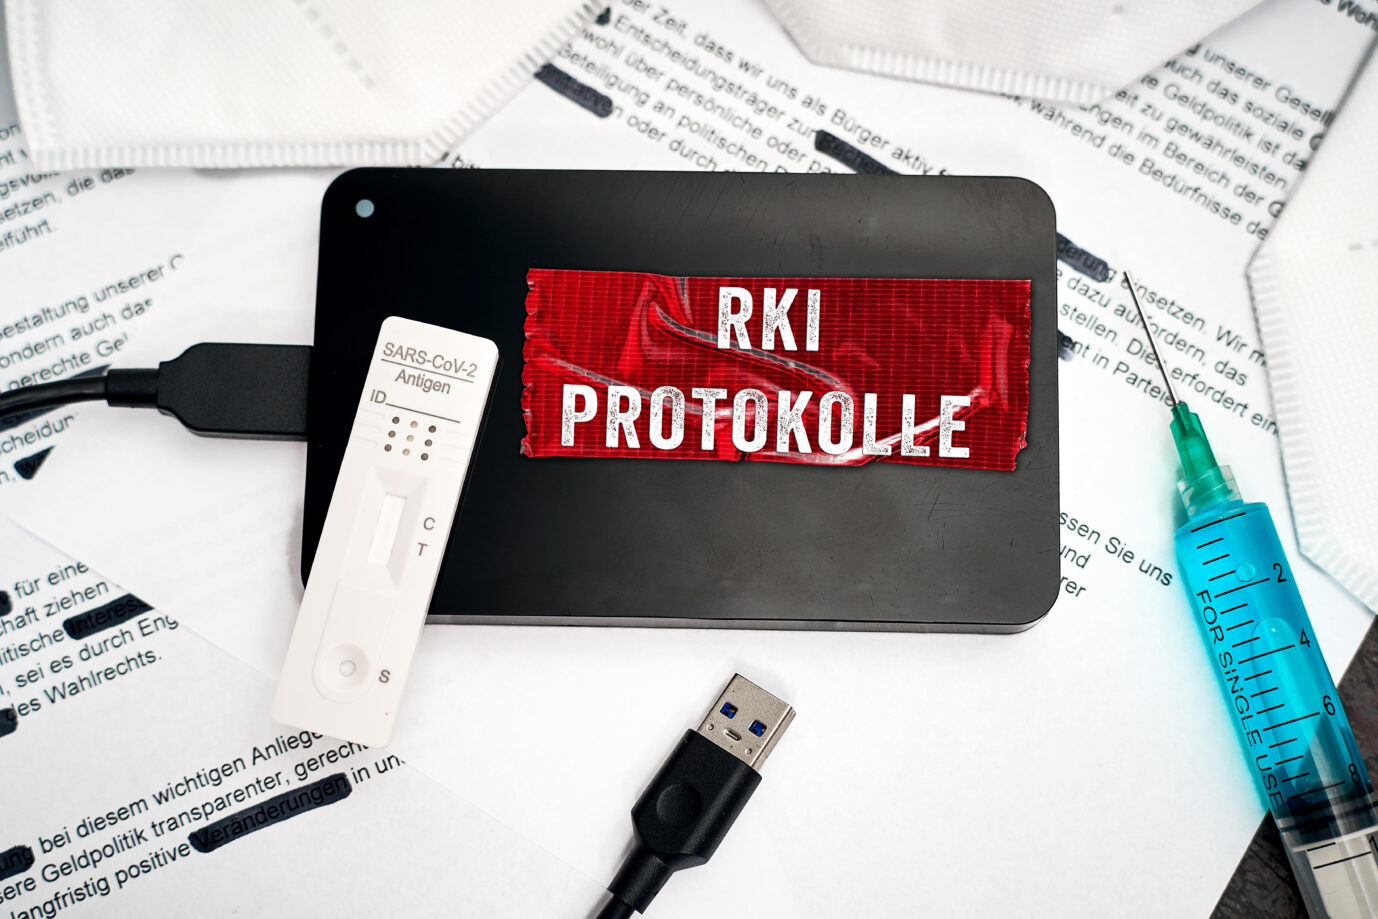 Symbolbild Robert Koch Institut Dokumente zu Covid-19. Eine Festplatte mit Aufschrift RKI Protokolle liegt auf geschwärzten Dokumenten zusammen mit FFP2-Masken, Spritze und Schnelltest. FOTOMONTAGE